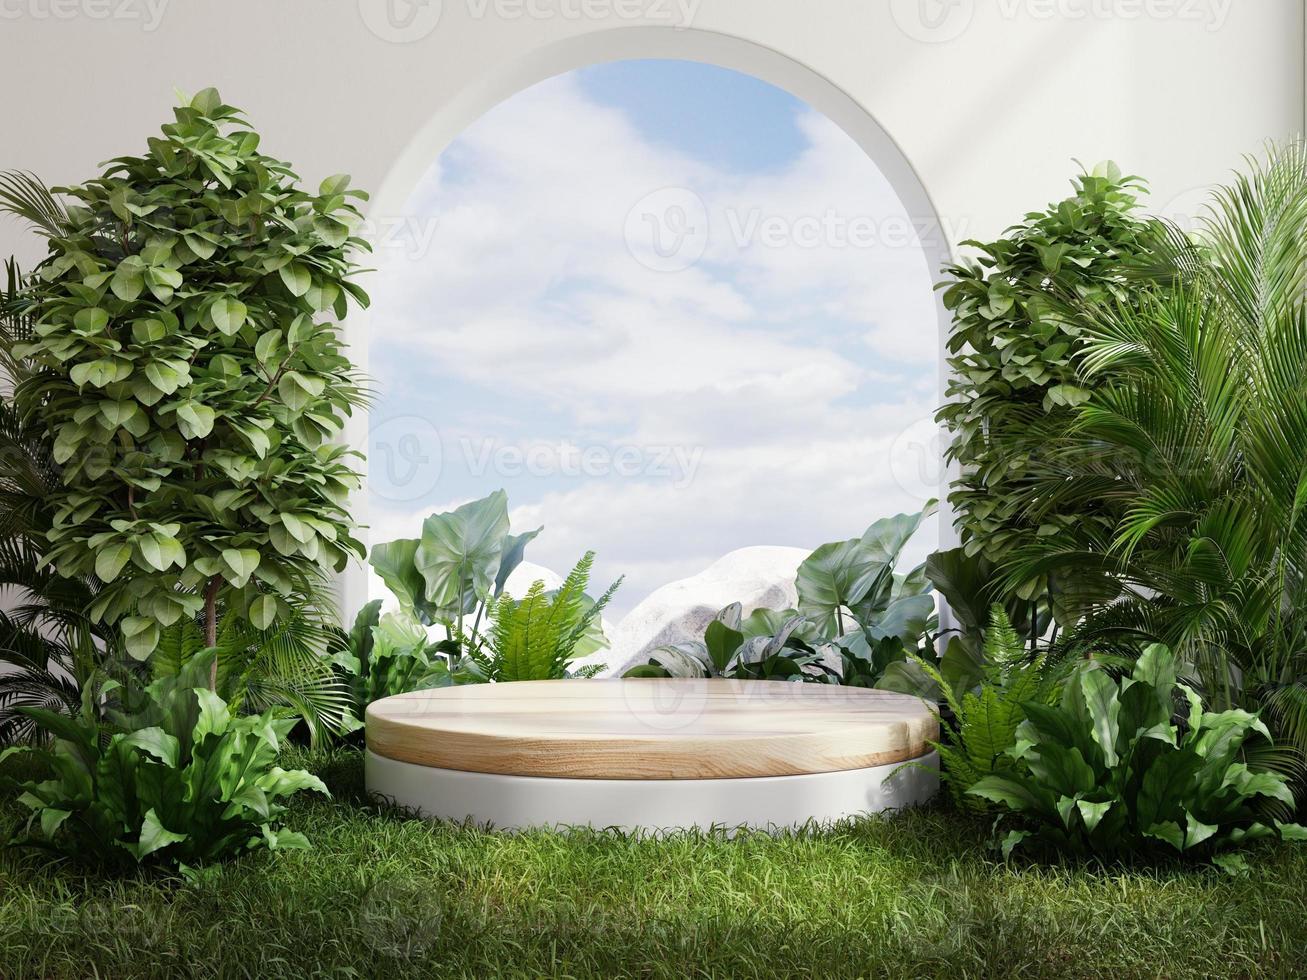 il podio del cerchio nella foresta tropicale per la presentazione del prodotto dietro c'è una vista del cielo. foto